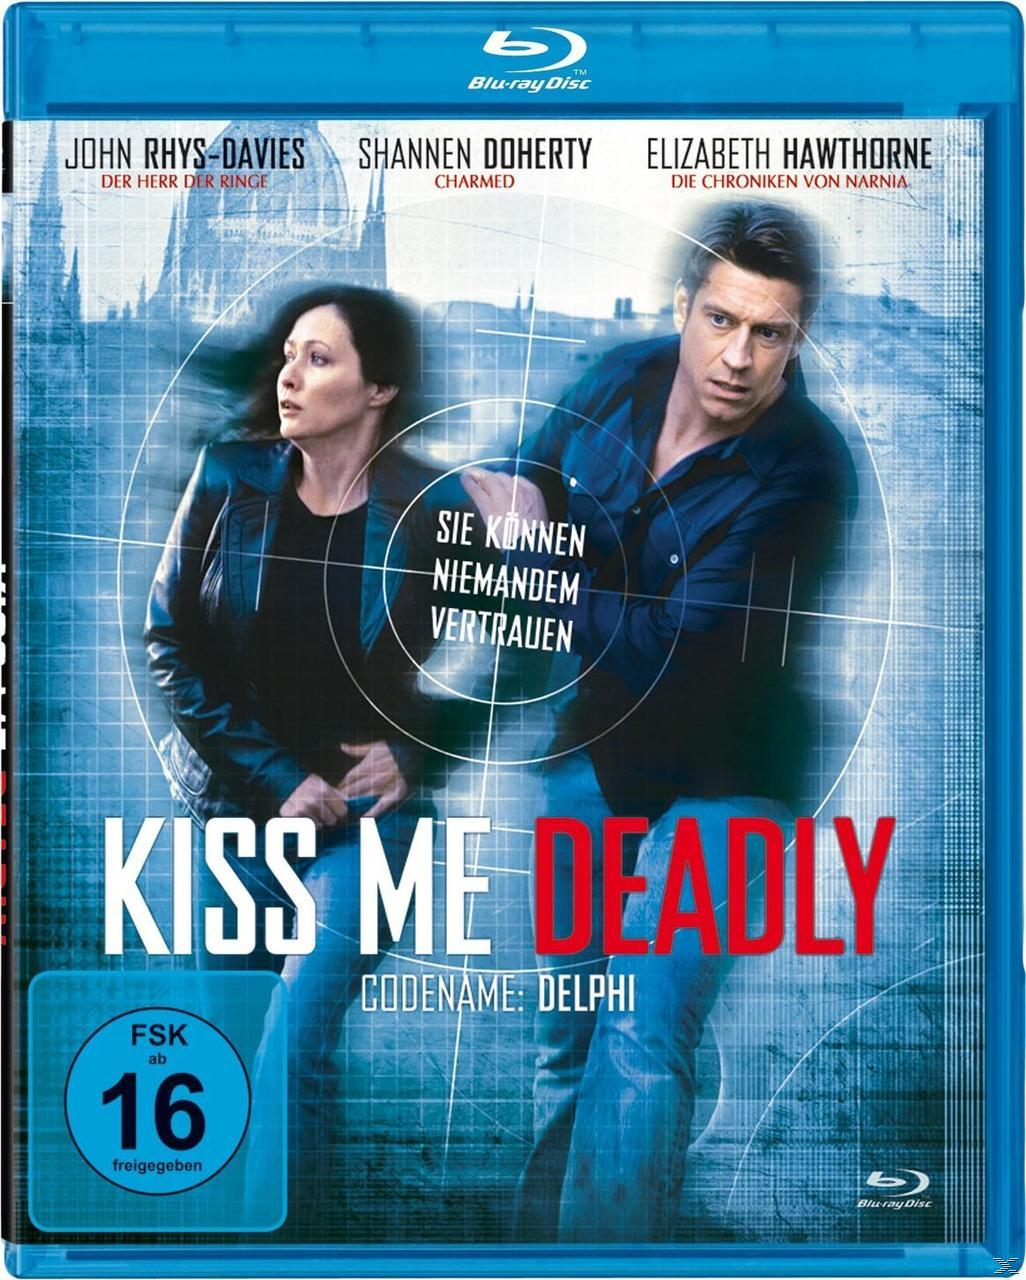 Me Kiss Blu-ray Deadly-Codename: Delphi